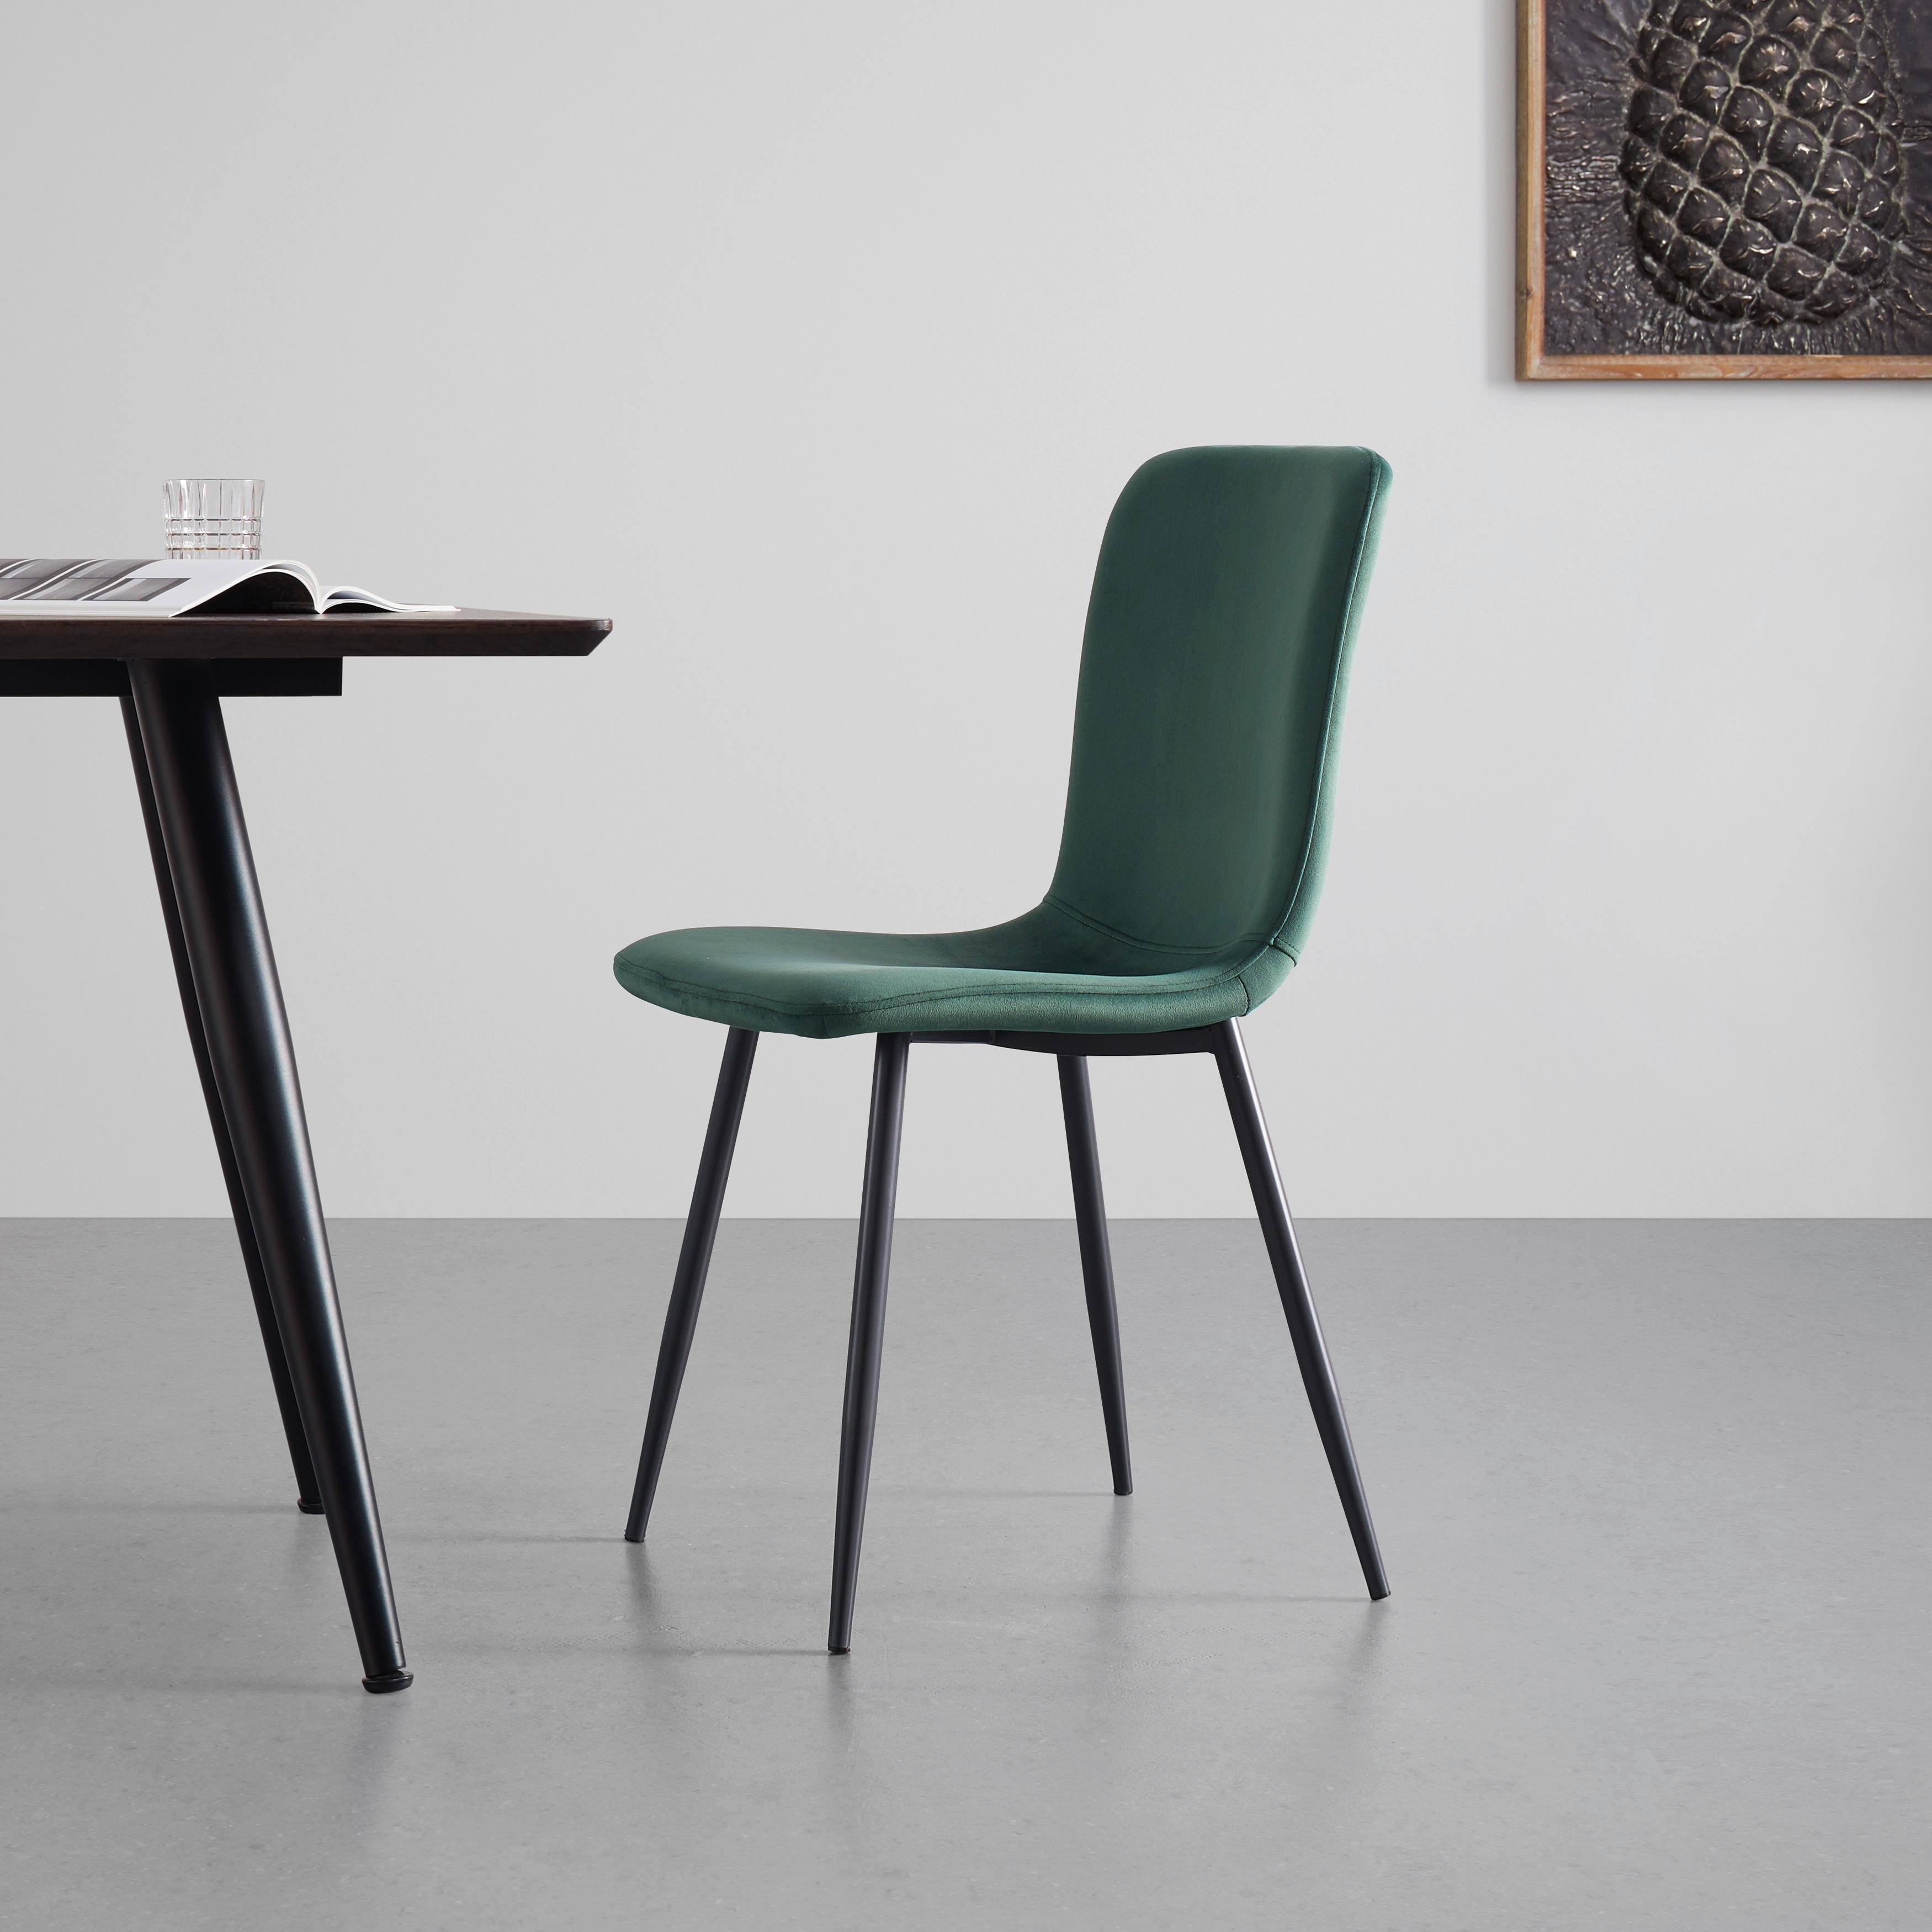 Moderní Židle Elif Zelená - černá/zelená, Moderní, kov/textil (43/86/54,5cm) - P & B